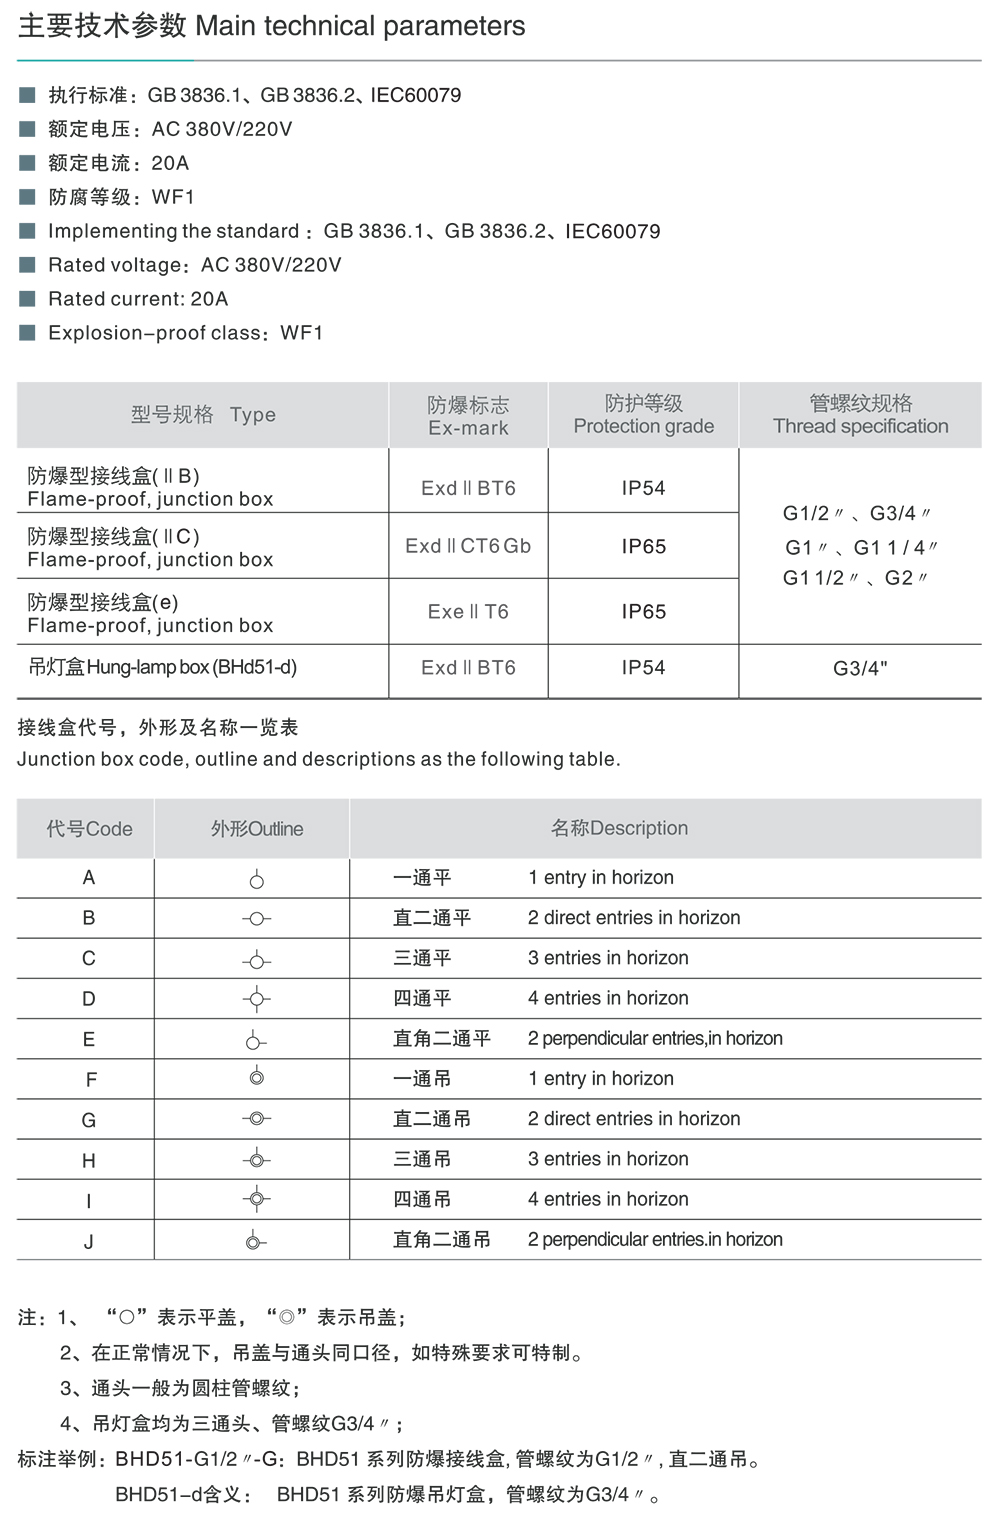 44118太阳成城集团BHD51系列防爆接线盒(ⅡB、ⅡC、e) 